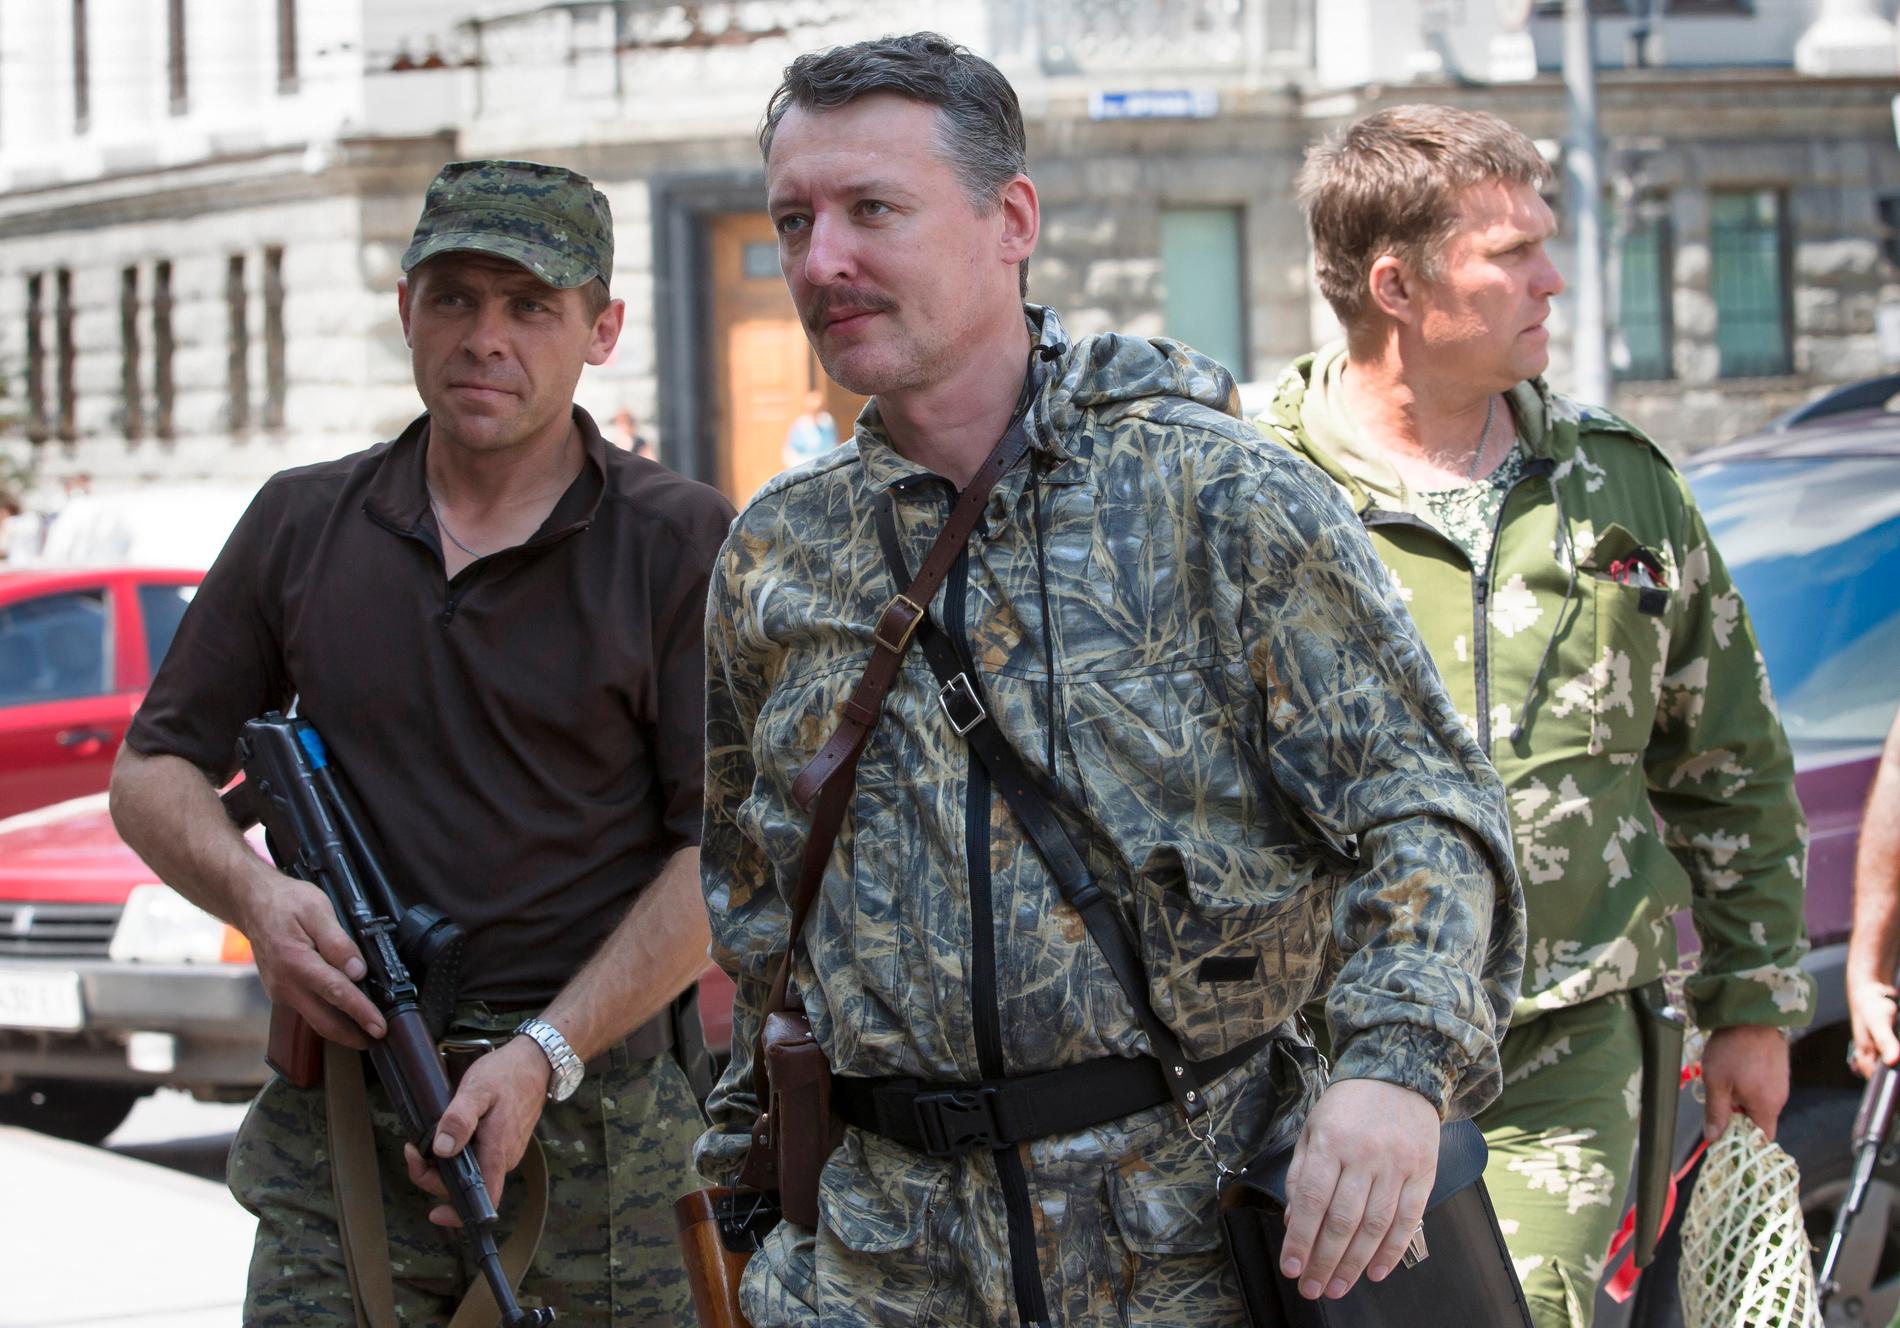 Un uomo importante: Igor Girkin è stato fotografato a Donetsk già nel 2014. Era un uomo importante per Mosca allo scoppio della guerra nel 2014.